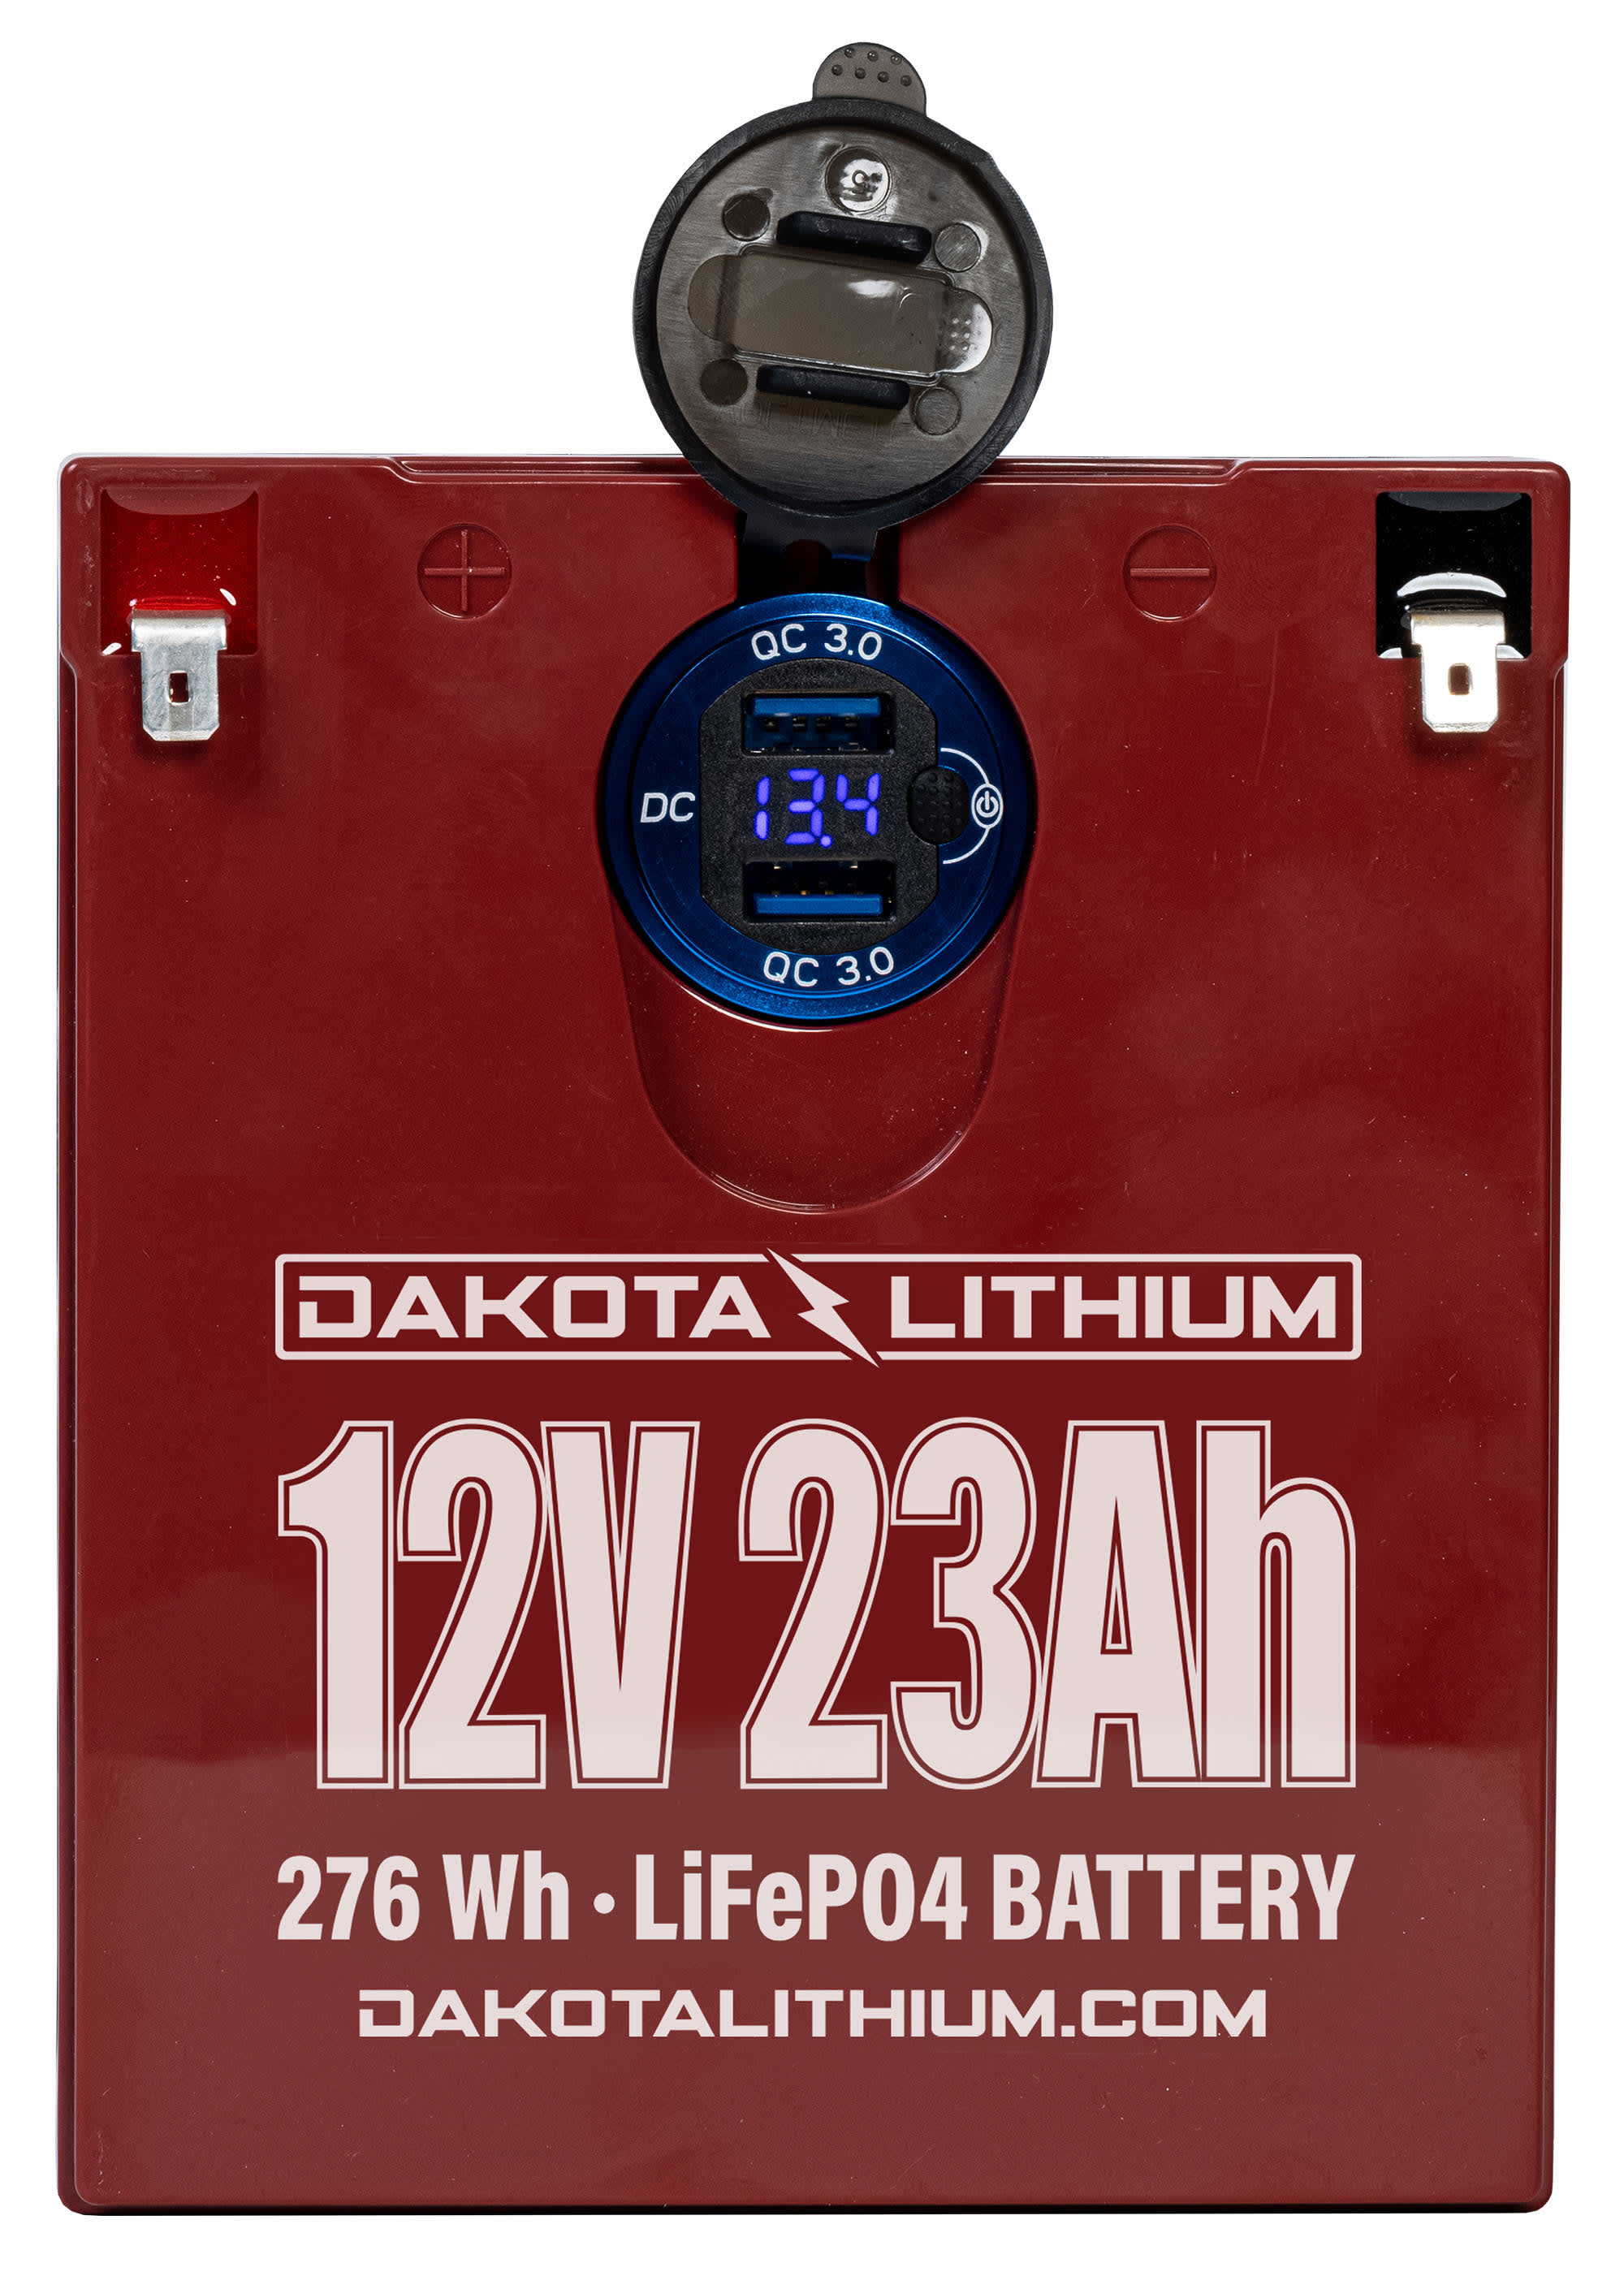 Dakota Lithium 12-Volt 23 AH Battery + USB